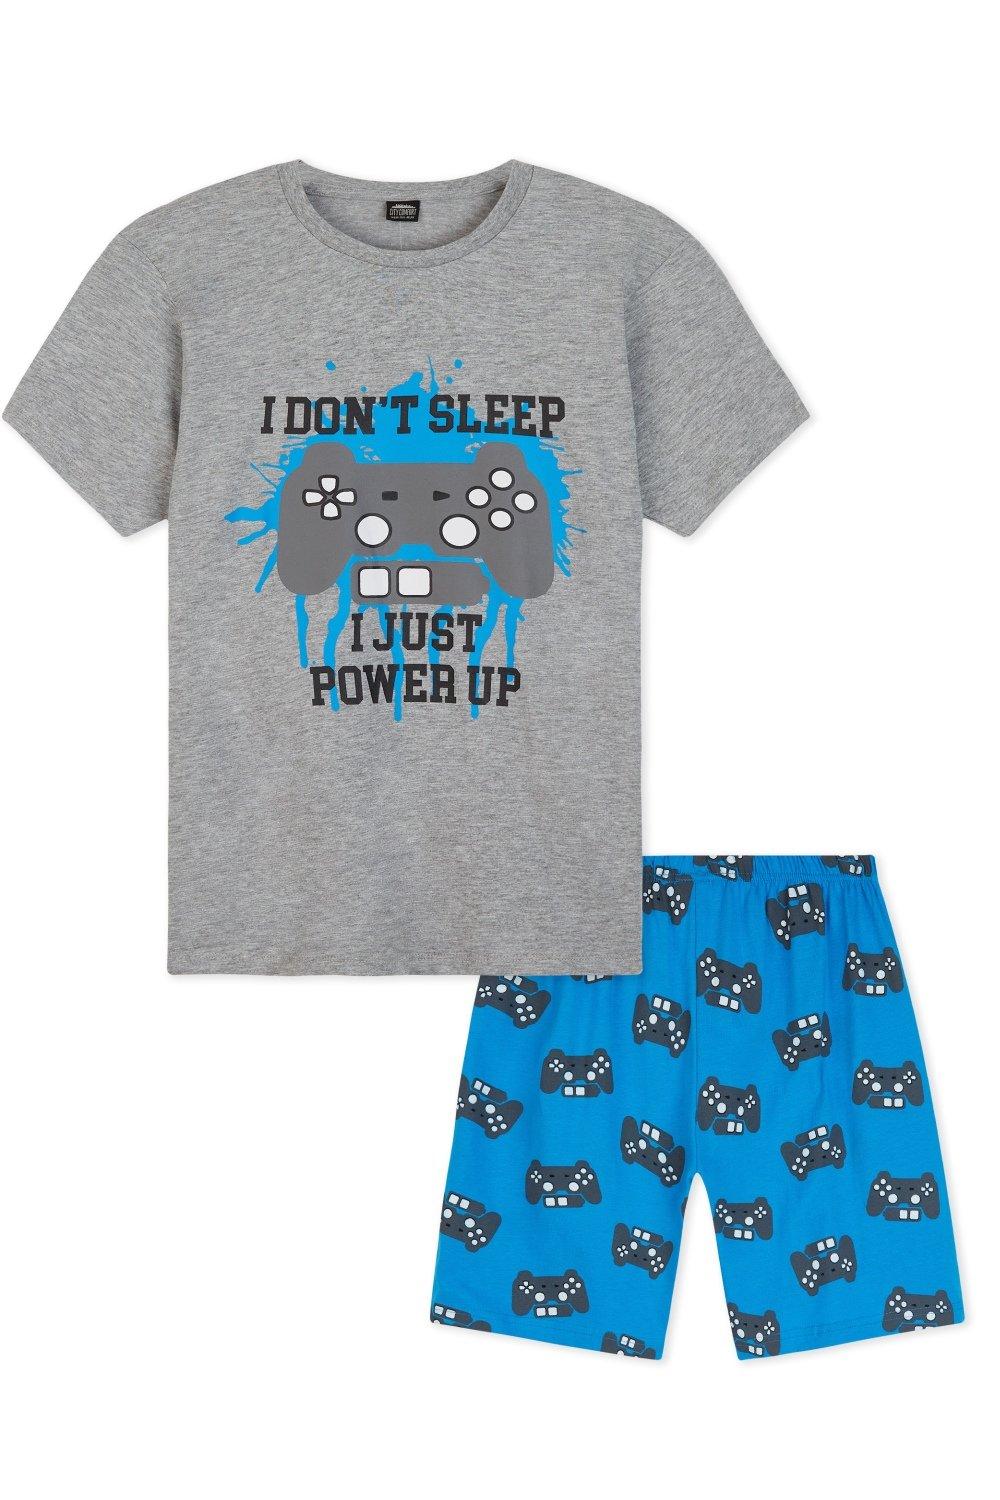 Игровой пижамный комплект «Я не сплю» CityComfort, мультиколор